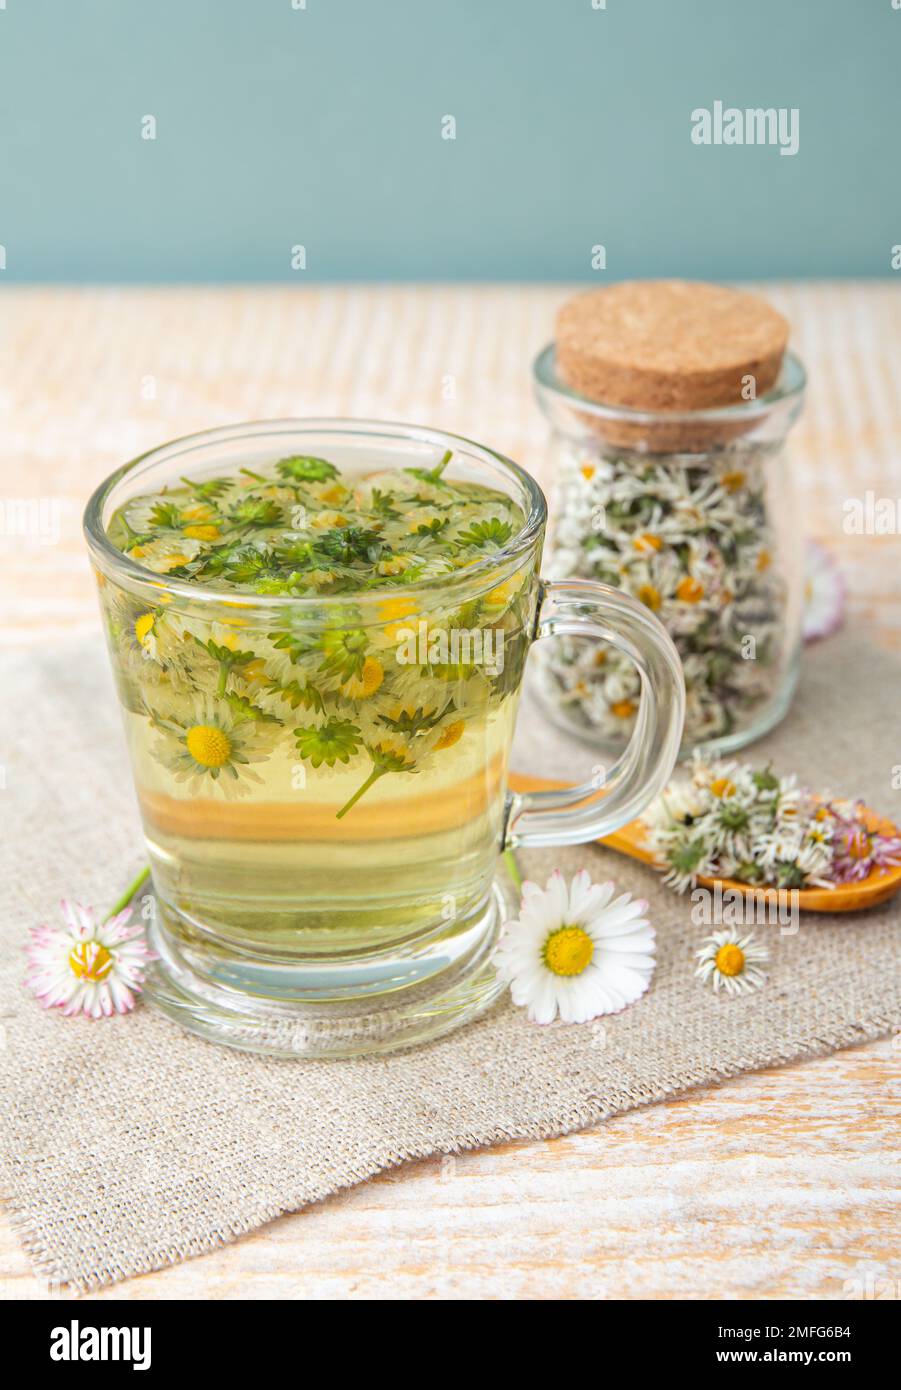 Pianta medicinale a base di erbe essiccata Daisy comune, noto anche come Bellis perennis. Fiori secchi in vaso di vetro e tè alle erbe in vetro, all'interno. Foto Stock